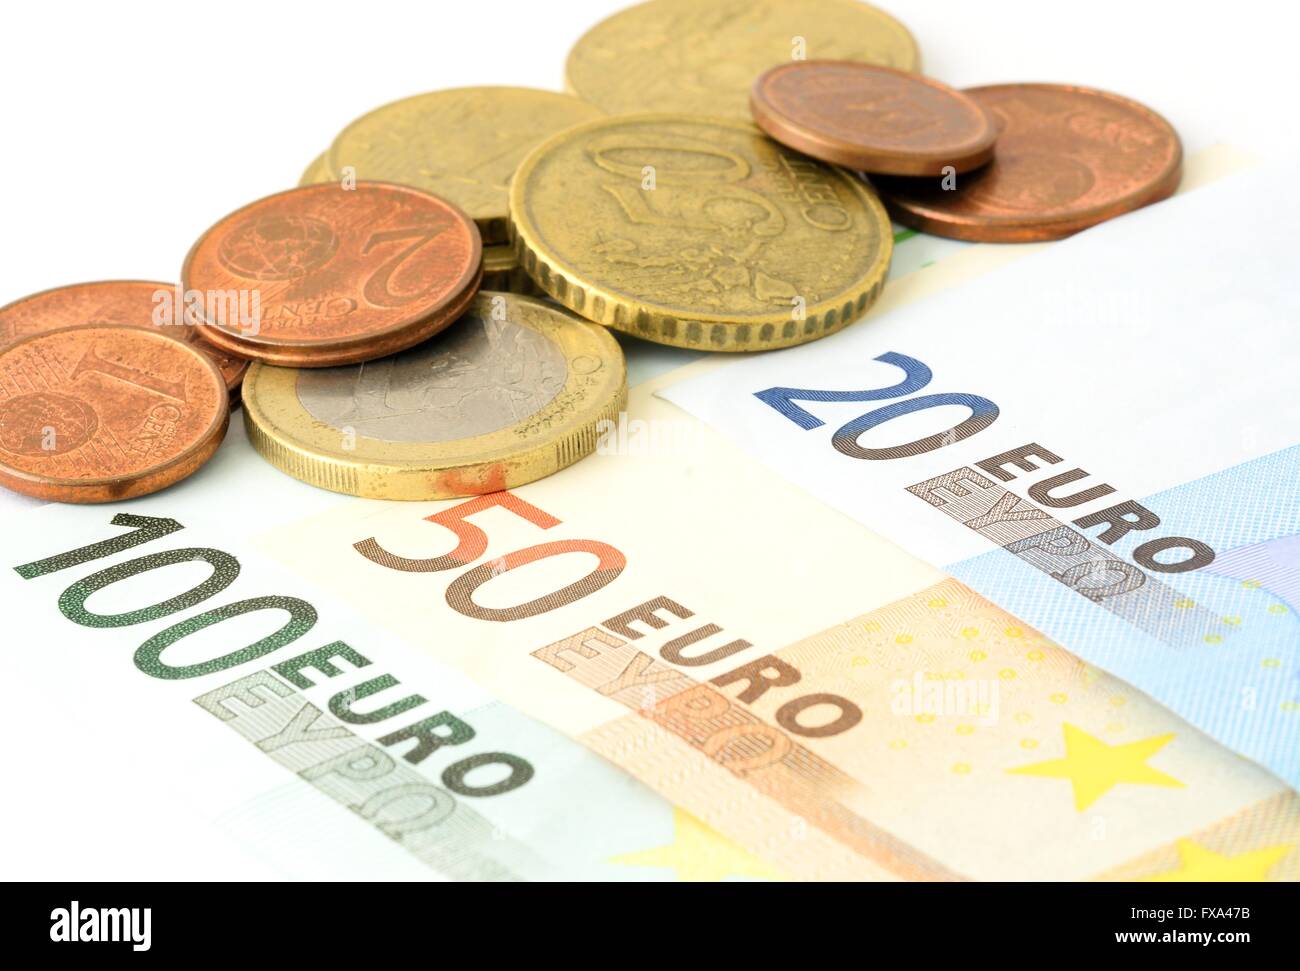 Billets et pièces de l'Union européenne sur fond blanc. Devise Euro. Les pièces en euros. Billet d'euro. 100 Euro. 50 Euro. 20 Euro. Ue Banque D'Images